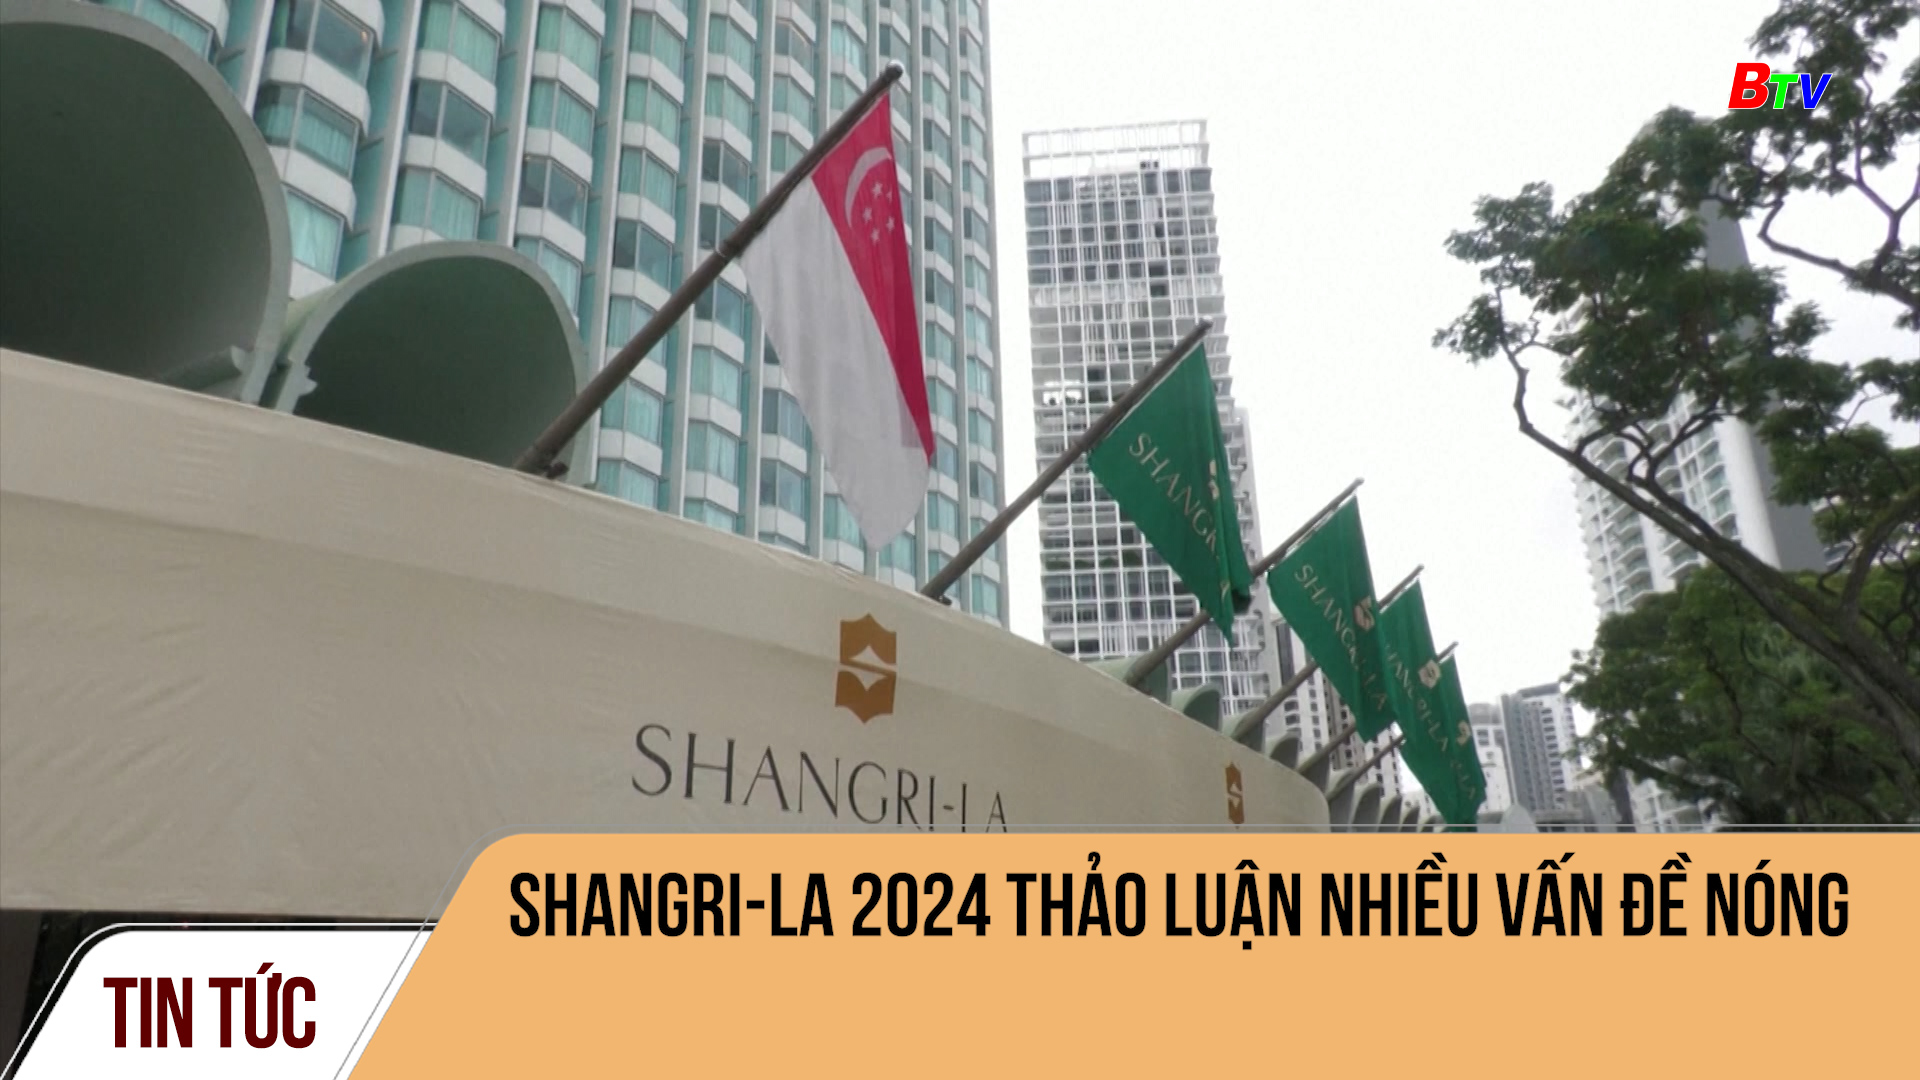 Shangri-La 2024 thảo luận nhiều vấn đề nóng